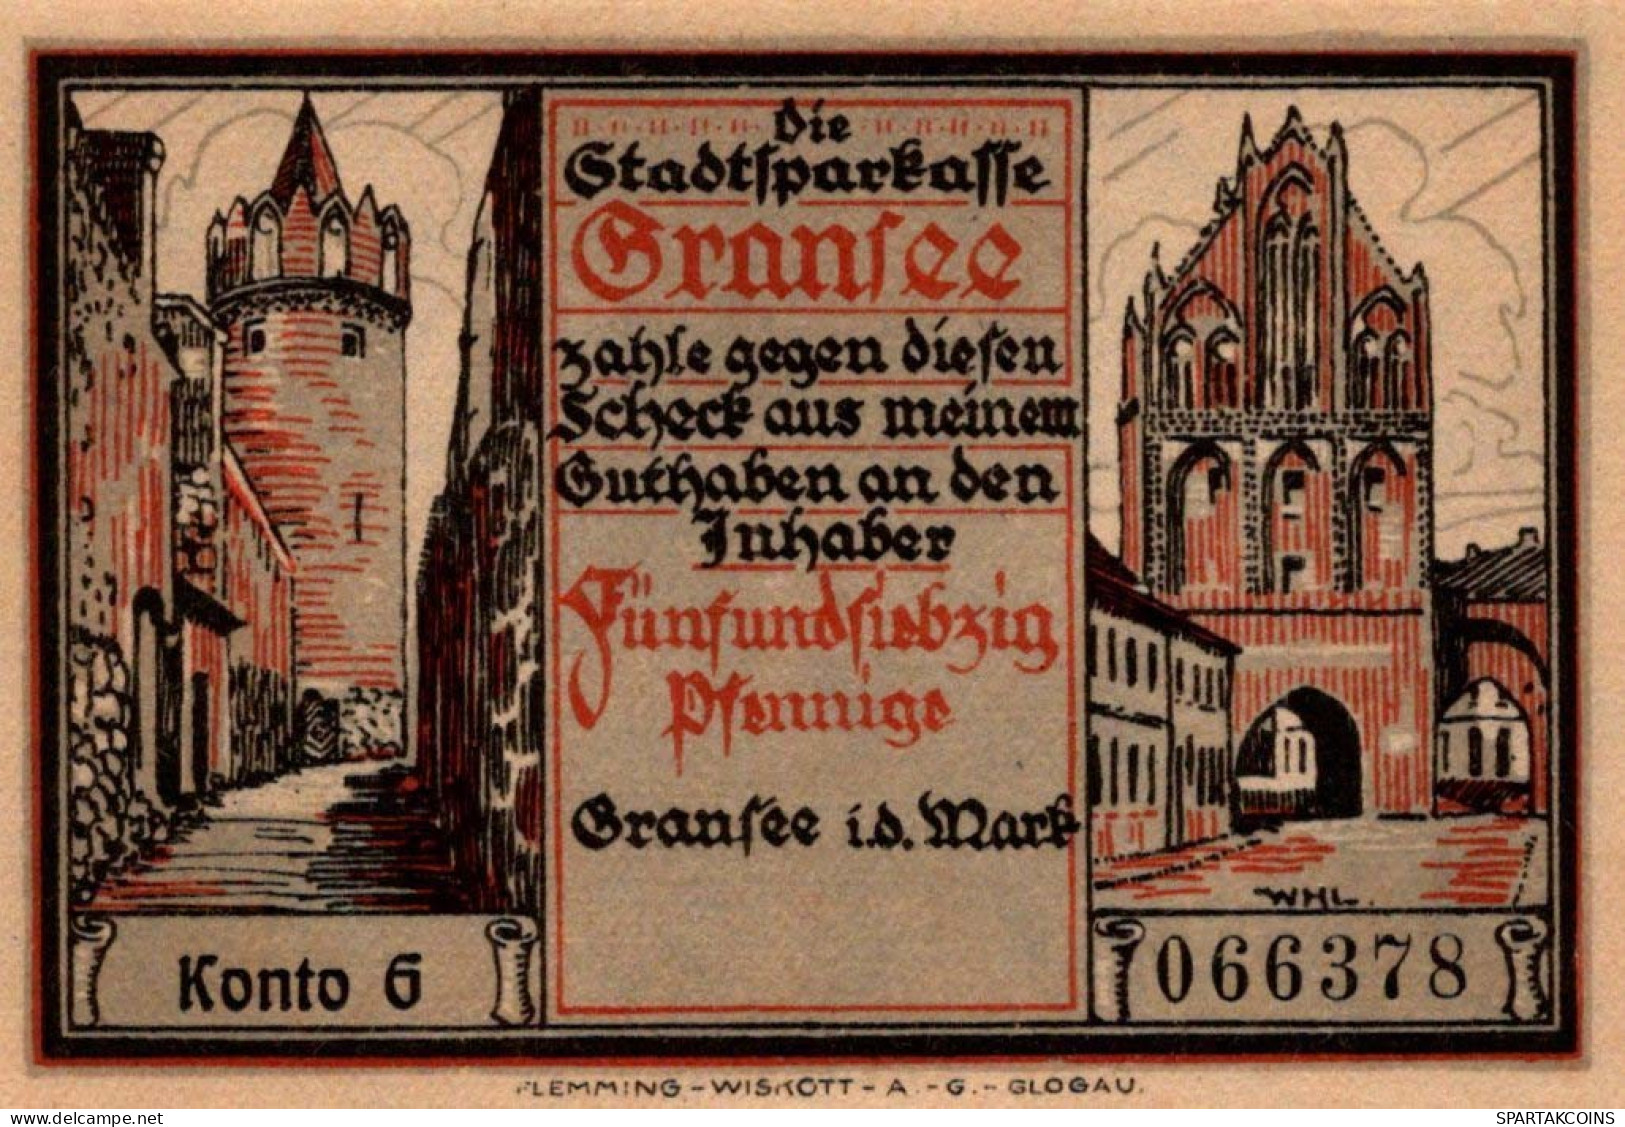 75 PFENNIG 1921 Stadt GRANSEE Brandenburg UNC DEUTSCHLAND Notgeld #PD029 - [11] Local Banknote Issues